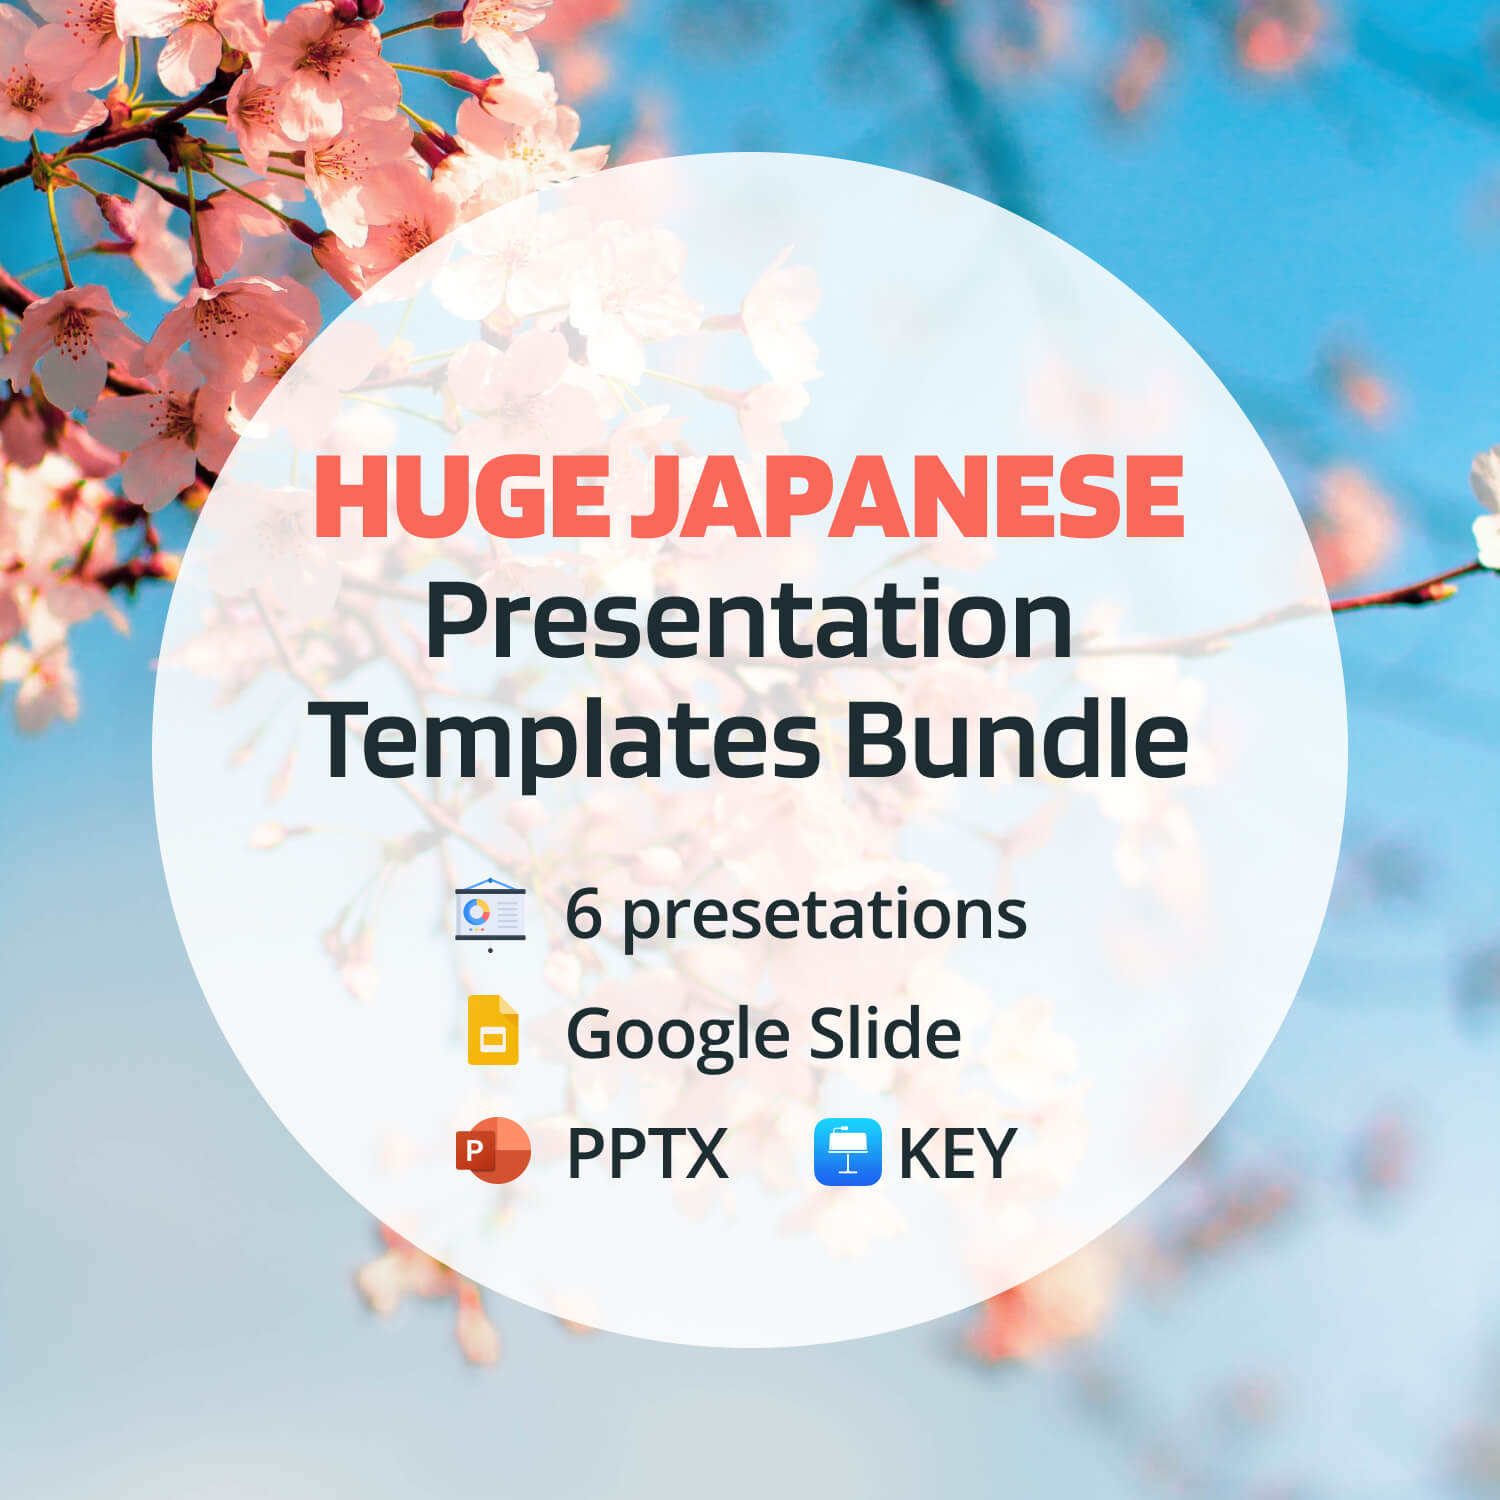 Huge Japanese Presentation Bundle: 300 Slides PPTX, KEY, Google Slides cover image.